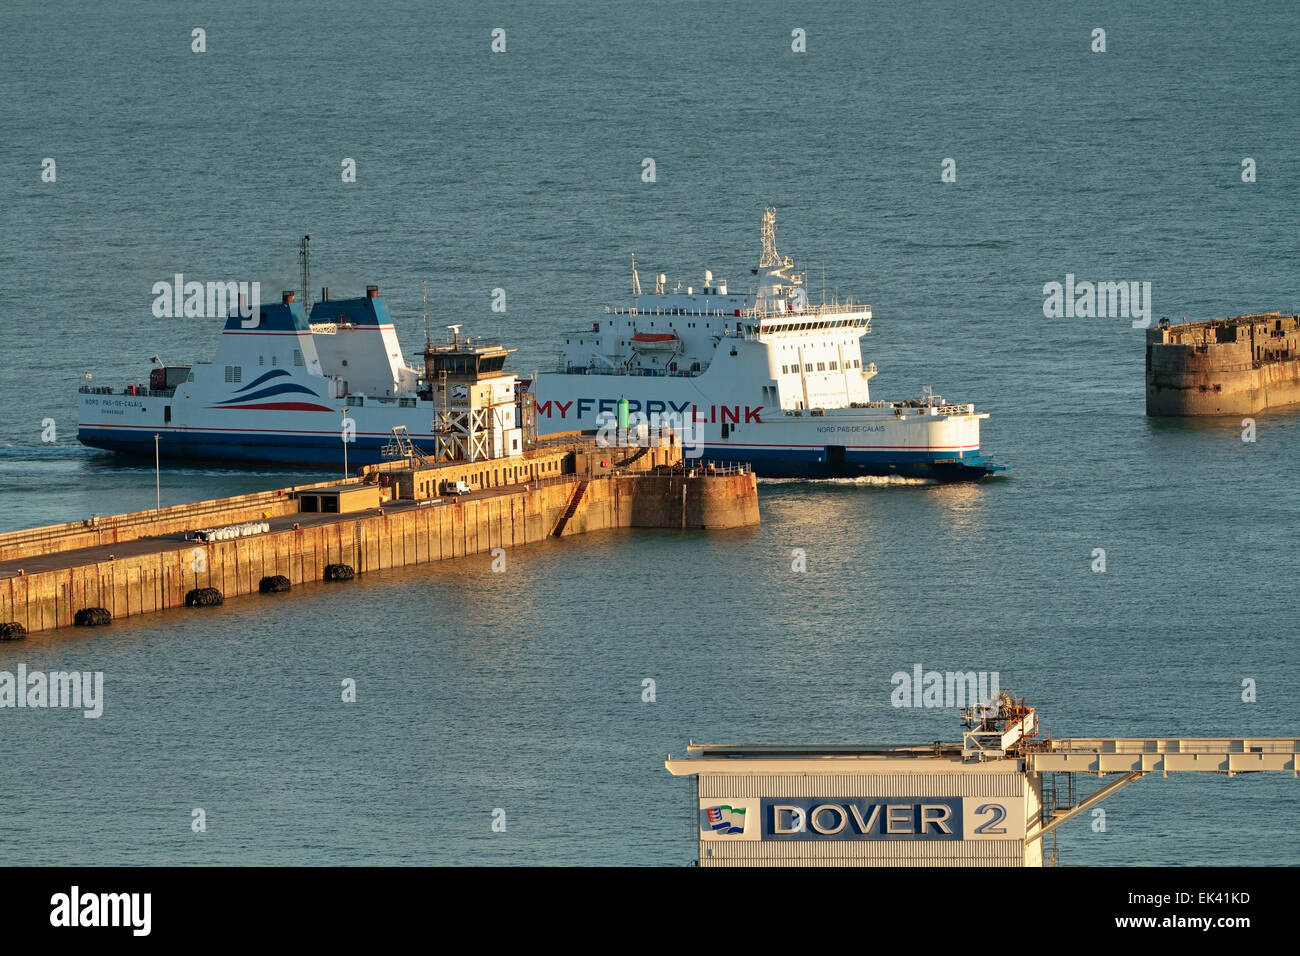 Mon Ferry Channel Ferry, entrant dans le port de Douvres, détroit de Douvres, dans le Kent en Angleterre, Royaume-Uni Banque D'Images